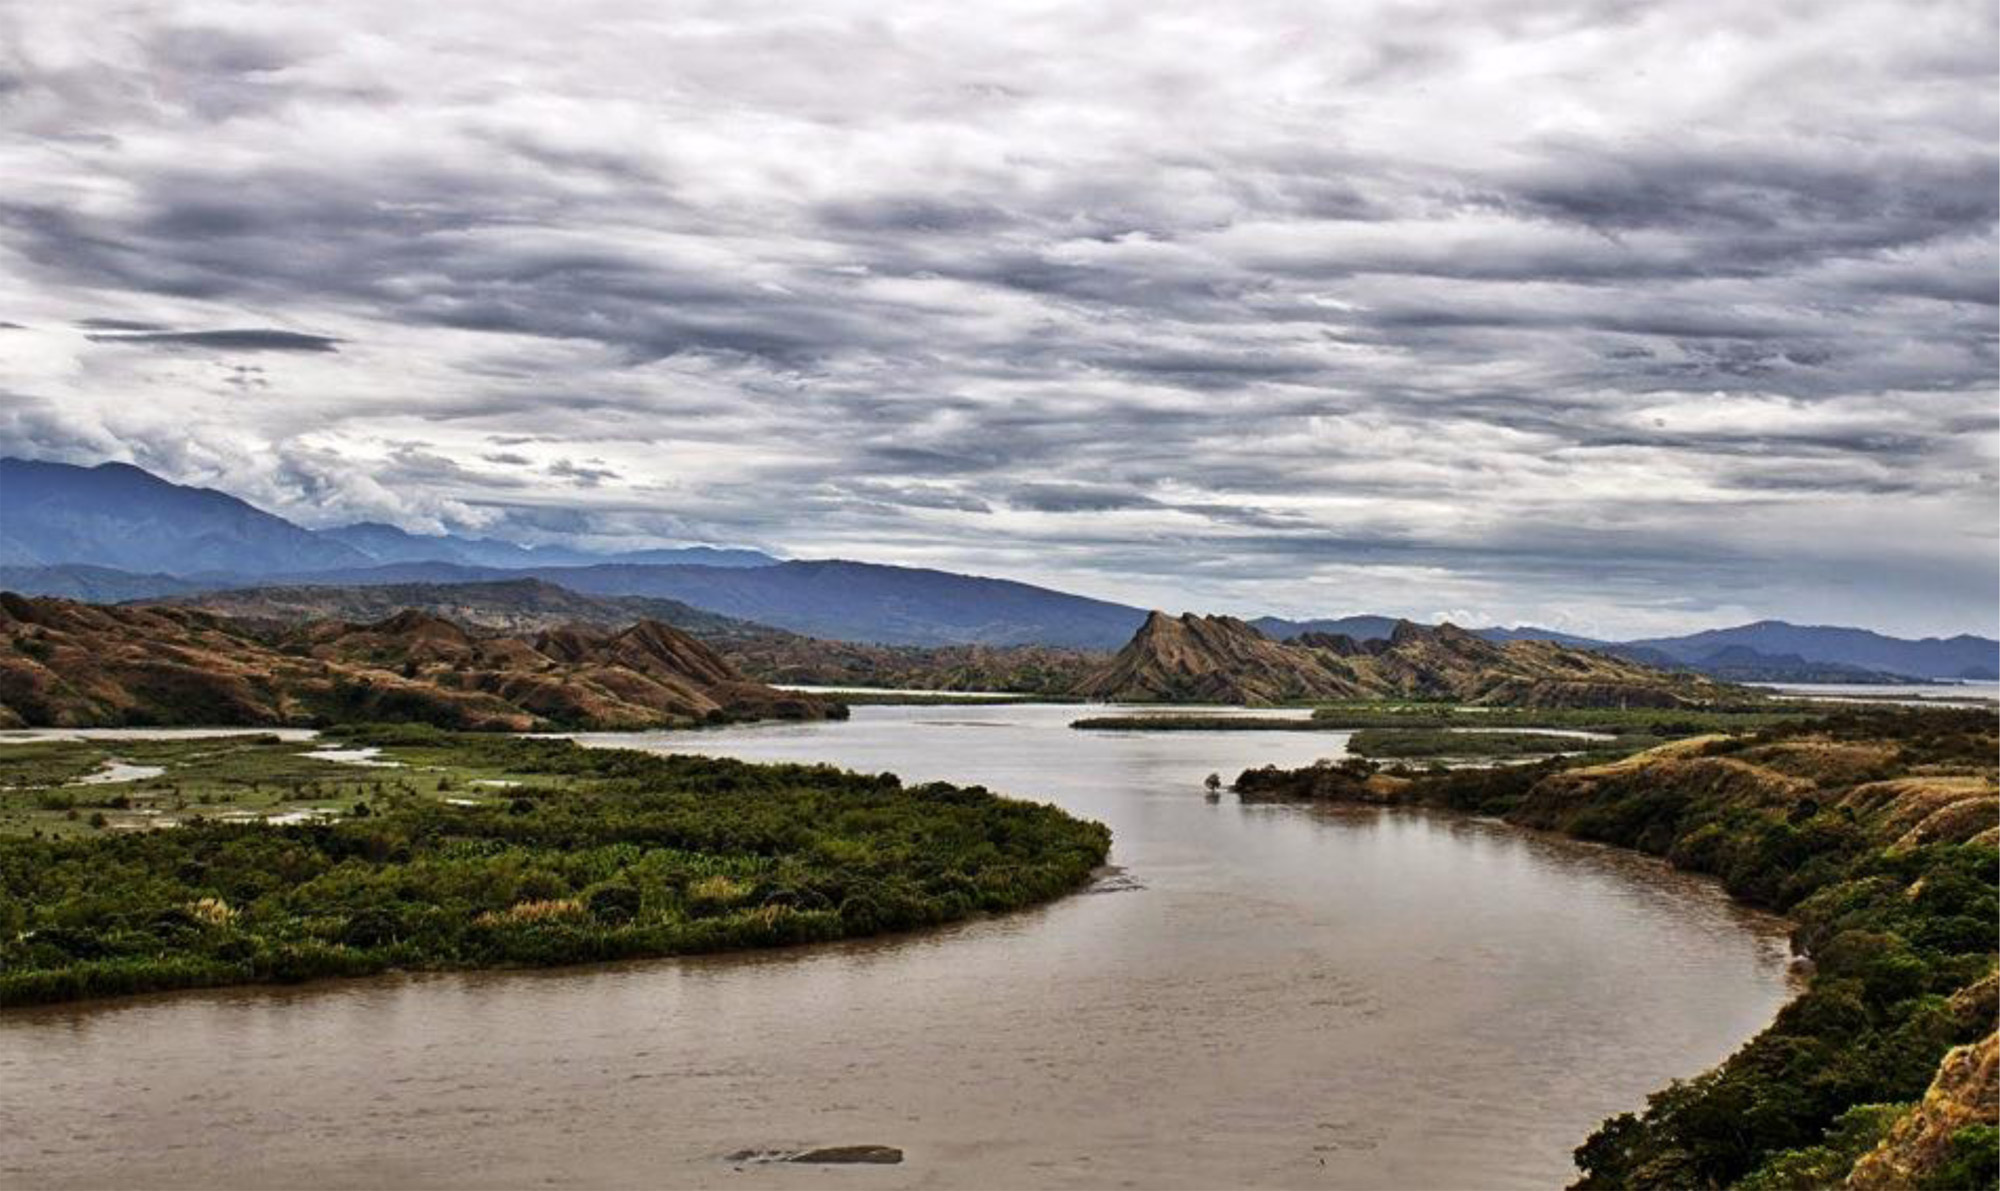 Река магдалена. Река Магдалена в Колумбии. Магдалена (река) реки Колумбии. Исток реки Магдалена. Долина реки Магдалена Колумбия.